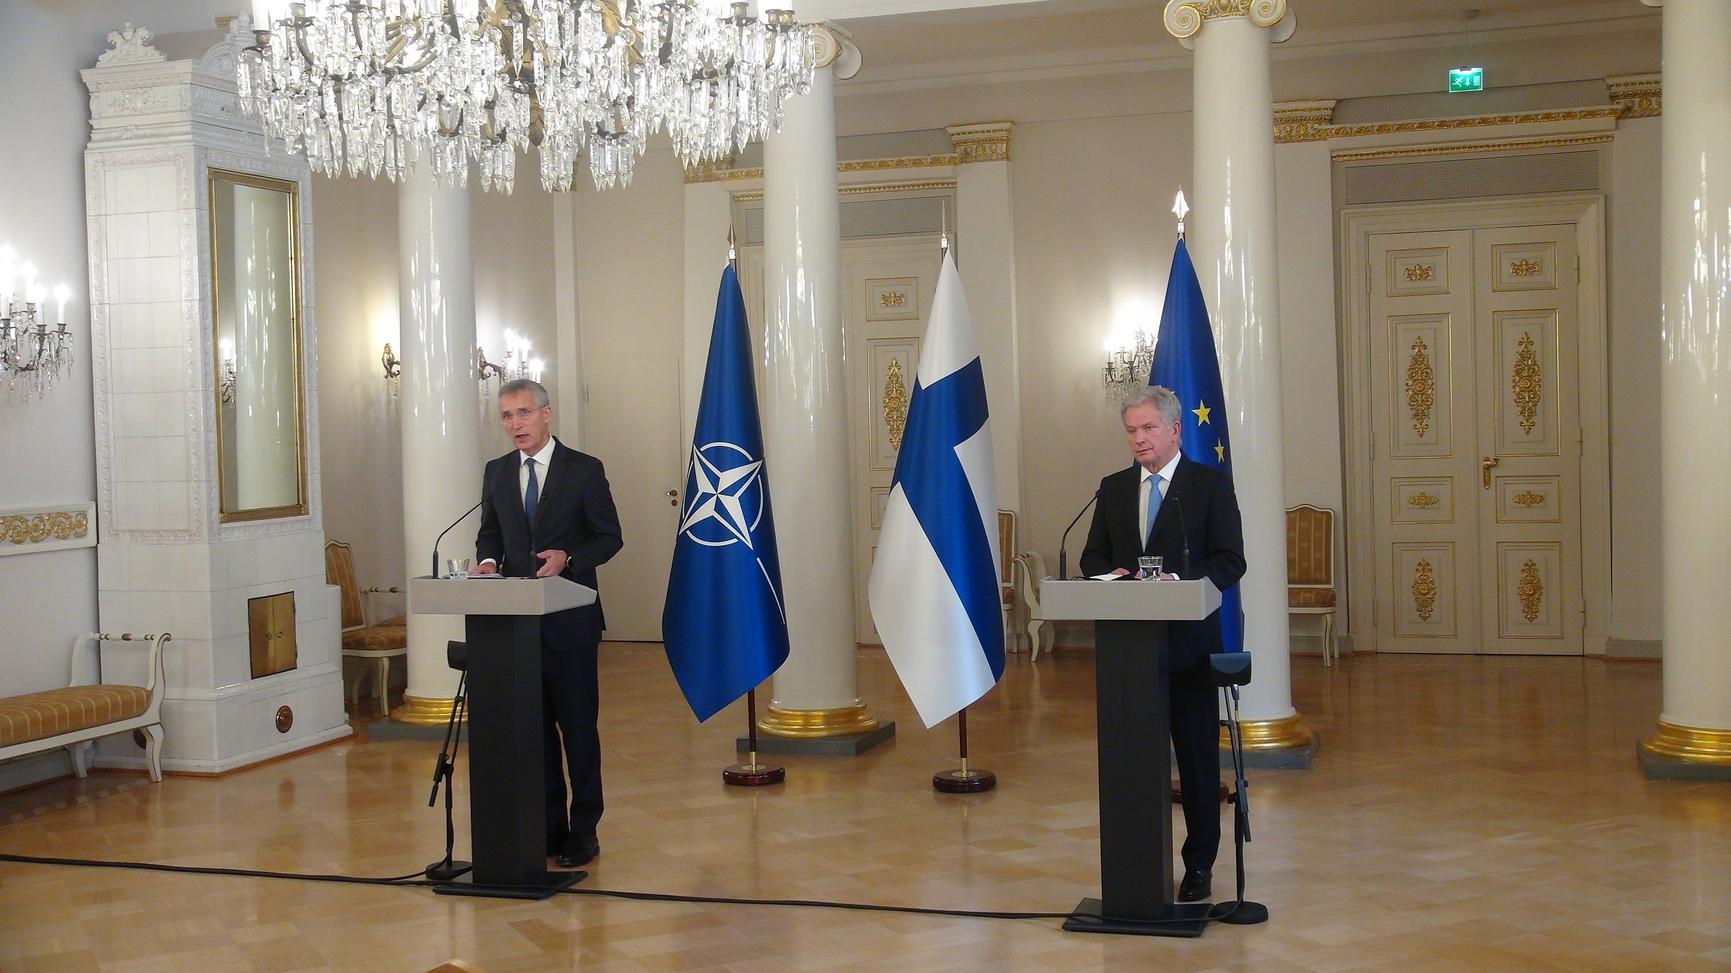 Suomen Nato-jäsenyys: Voiko yksi jäsenmaa estää sen? Tästä kyse | Apu